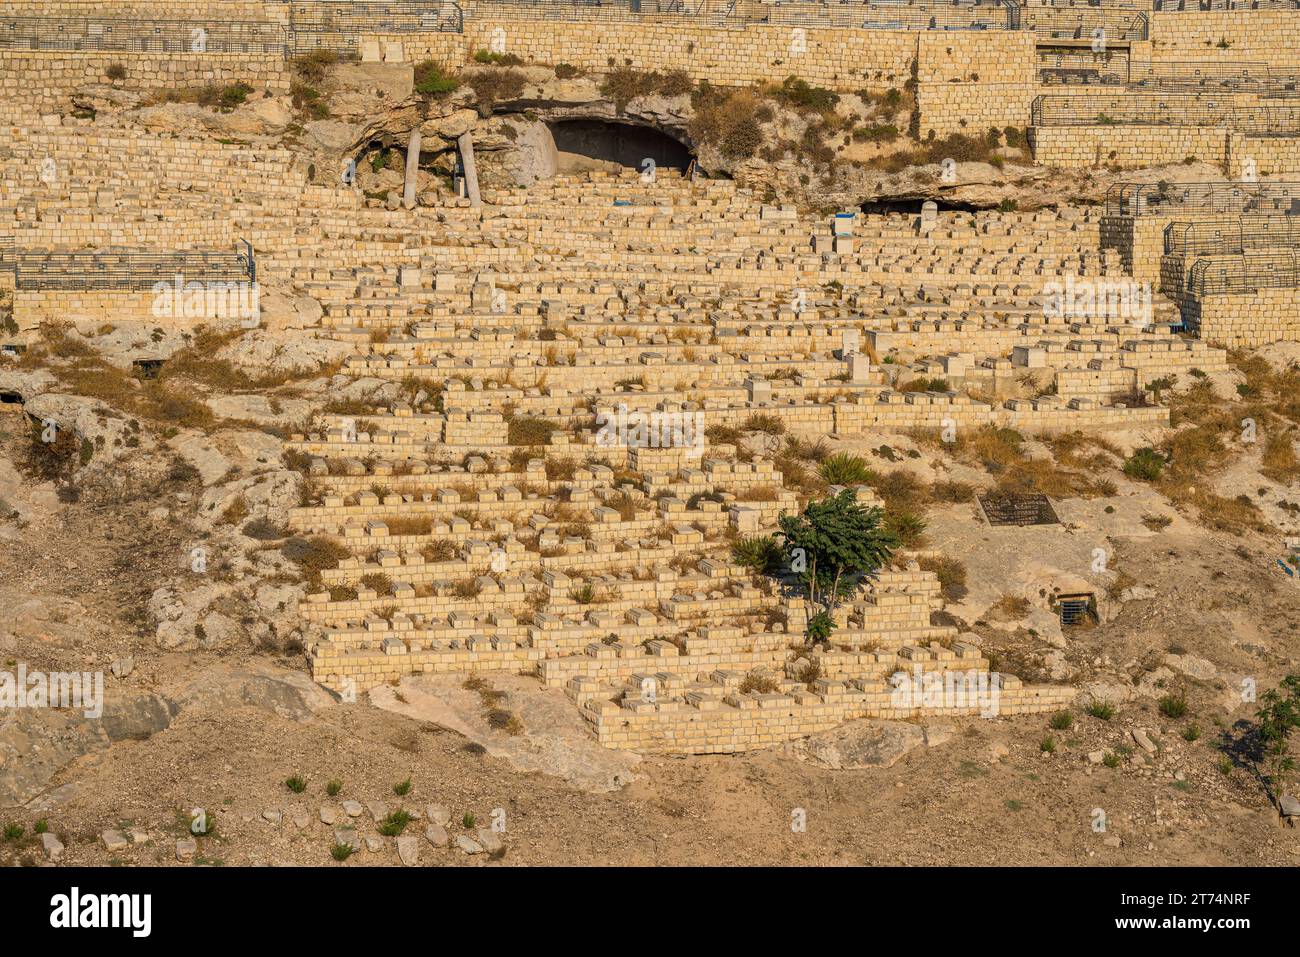 Veduta del Cimitero del Monte degli Ulivi, un antico luogo ebraico di sepoltura a Gerusalemme, Israele Foto Stock